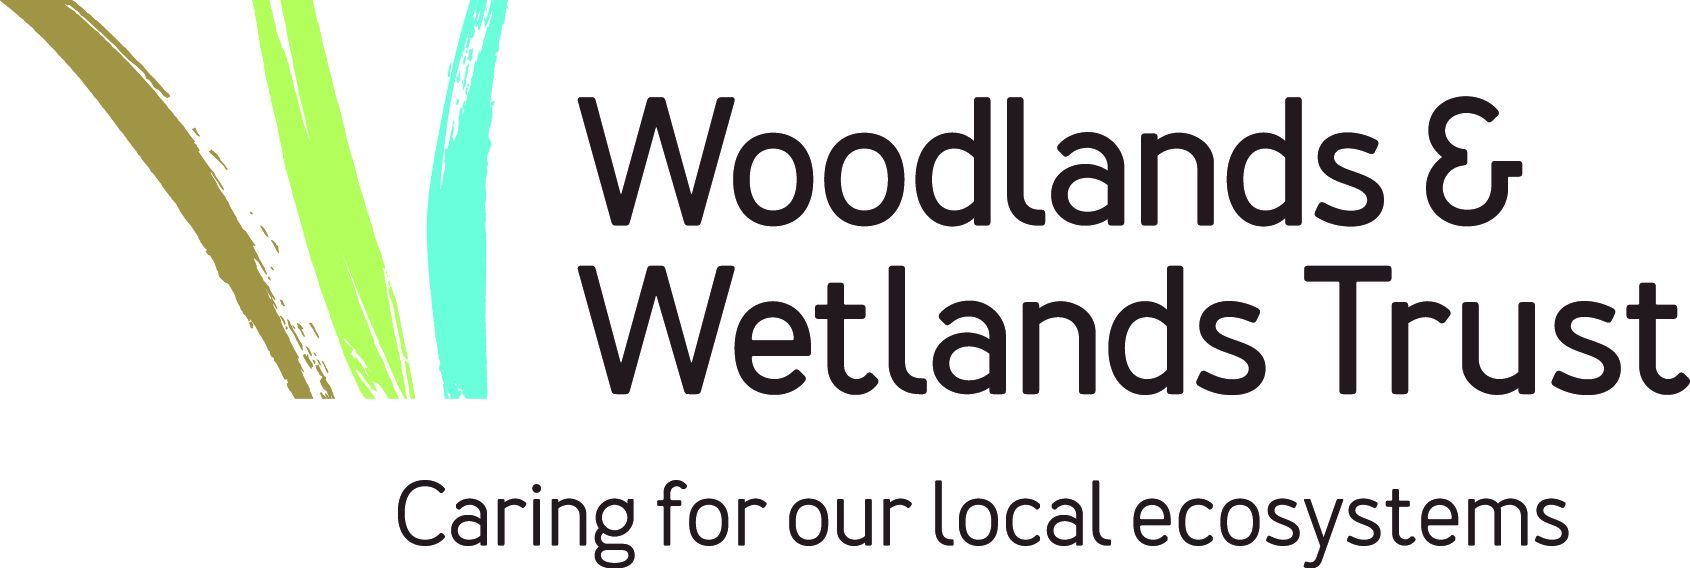 Woodlands & Wetlands Trust